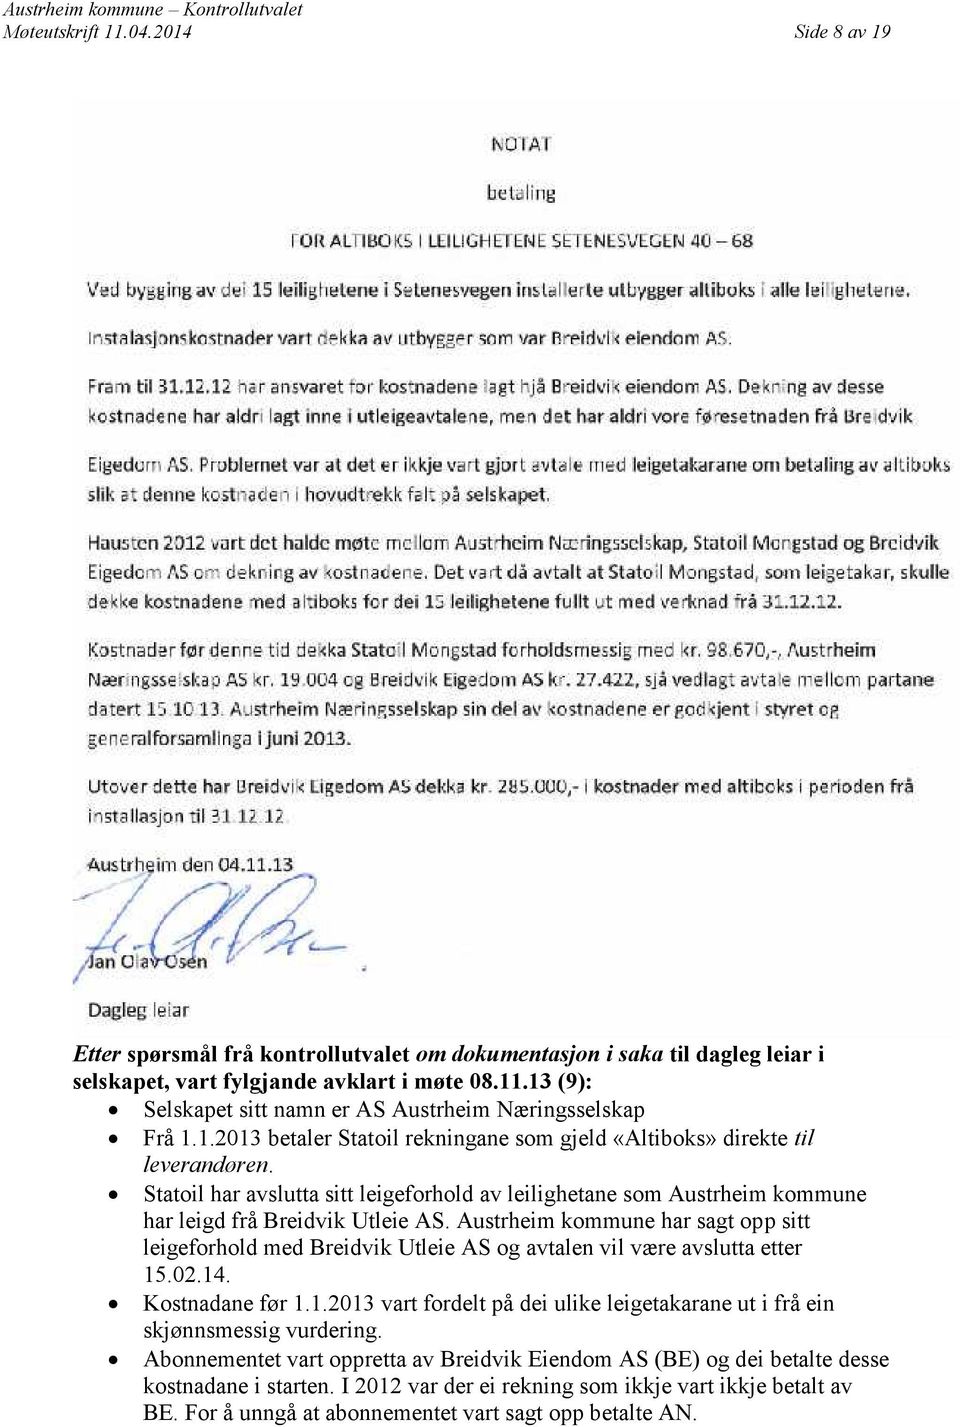 Austrheim kommune har sagt opp sitt leigeforhold med Breidvik Utleie AS og avtalen vil være avslutta etter 15.02.14. Kostnadane før 1.1.2013 vart fordelt på dei ulike leigetakarane ut i frå ein skjønnsmessig vurdering.